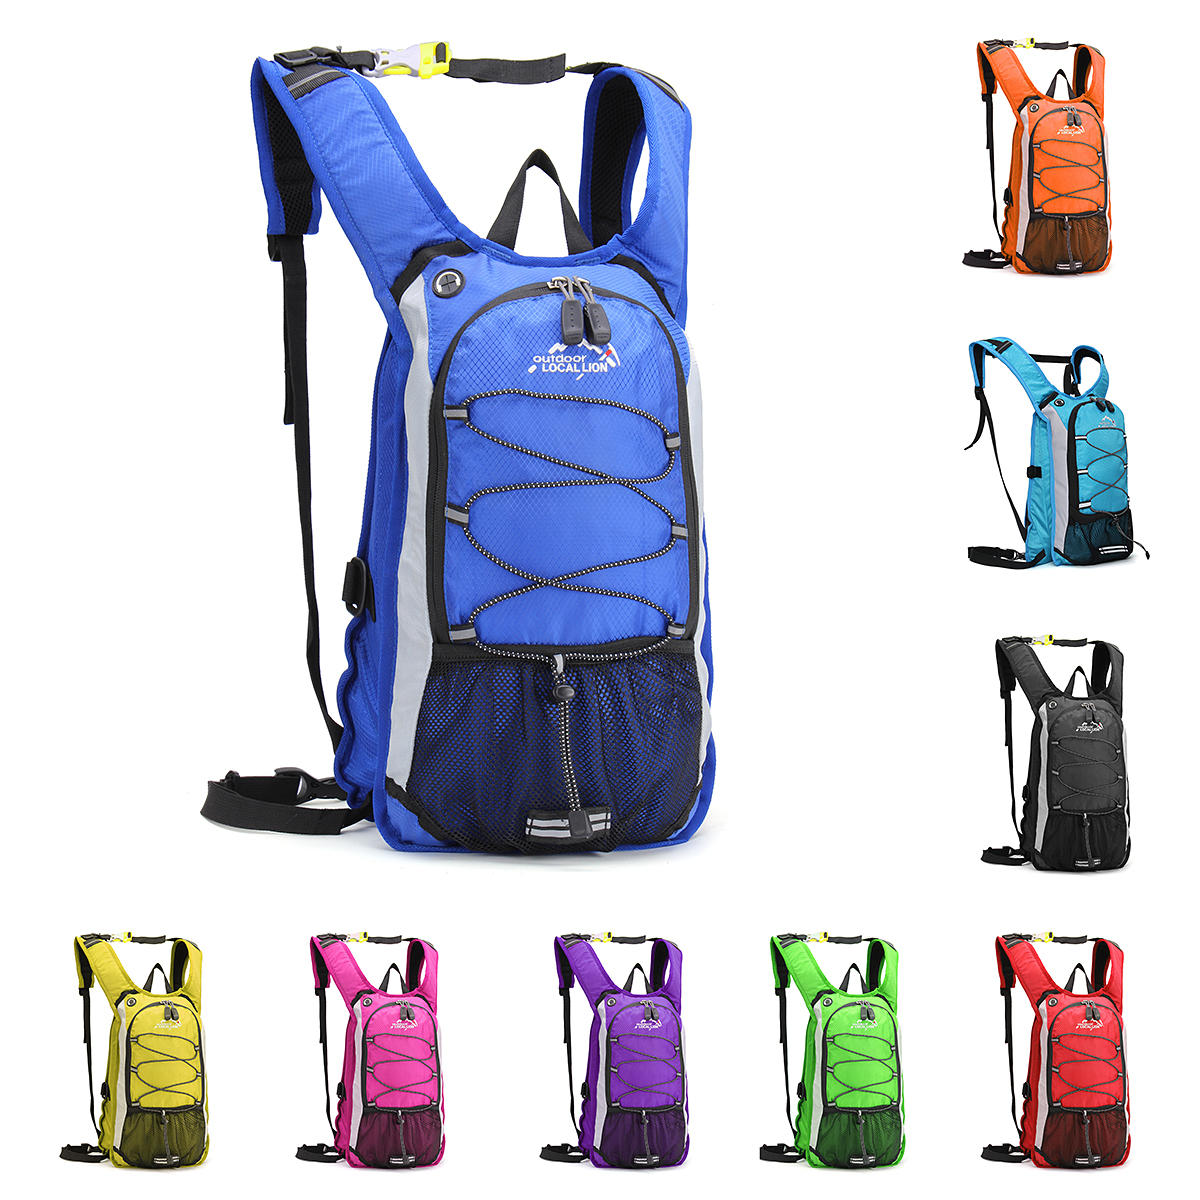 CAMTOA Outdoor-Paket wasserdichter Nylon-Schultertasche zum Fahrradfahren, Klettern, Wandern und leichten Rucksack.